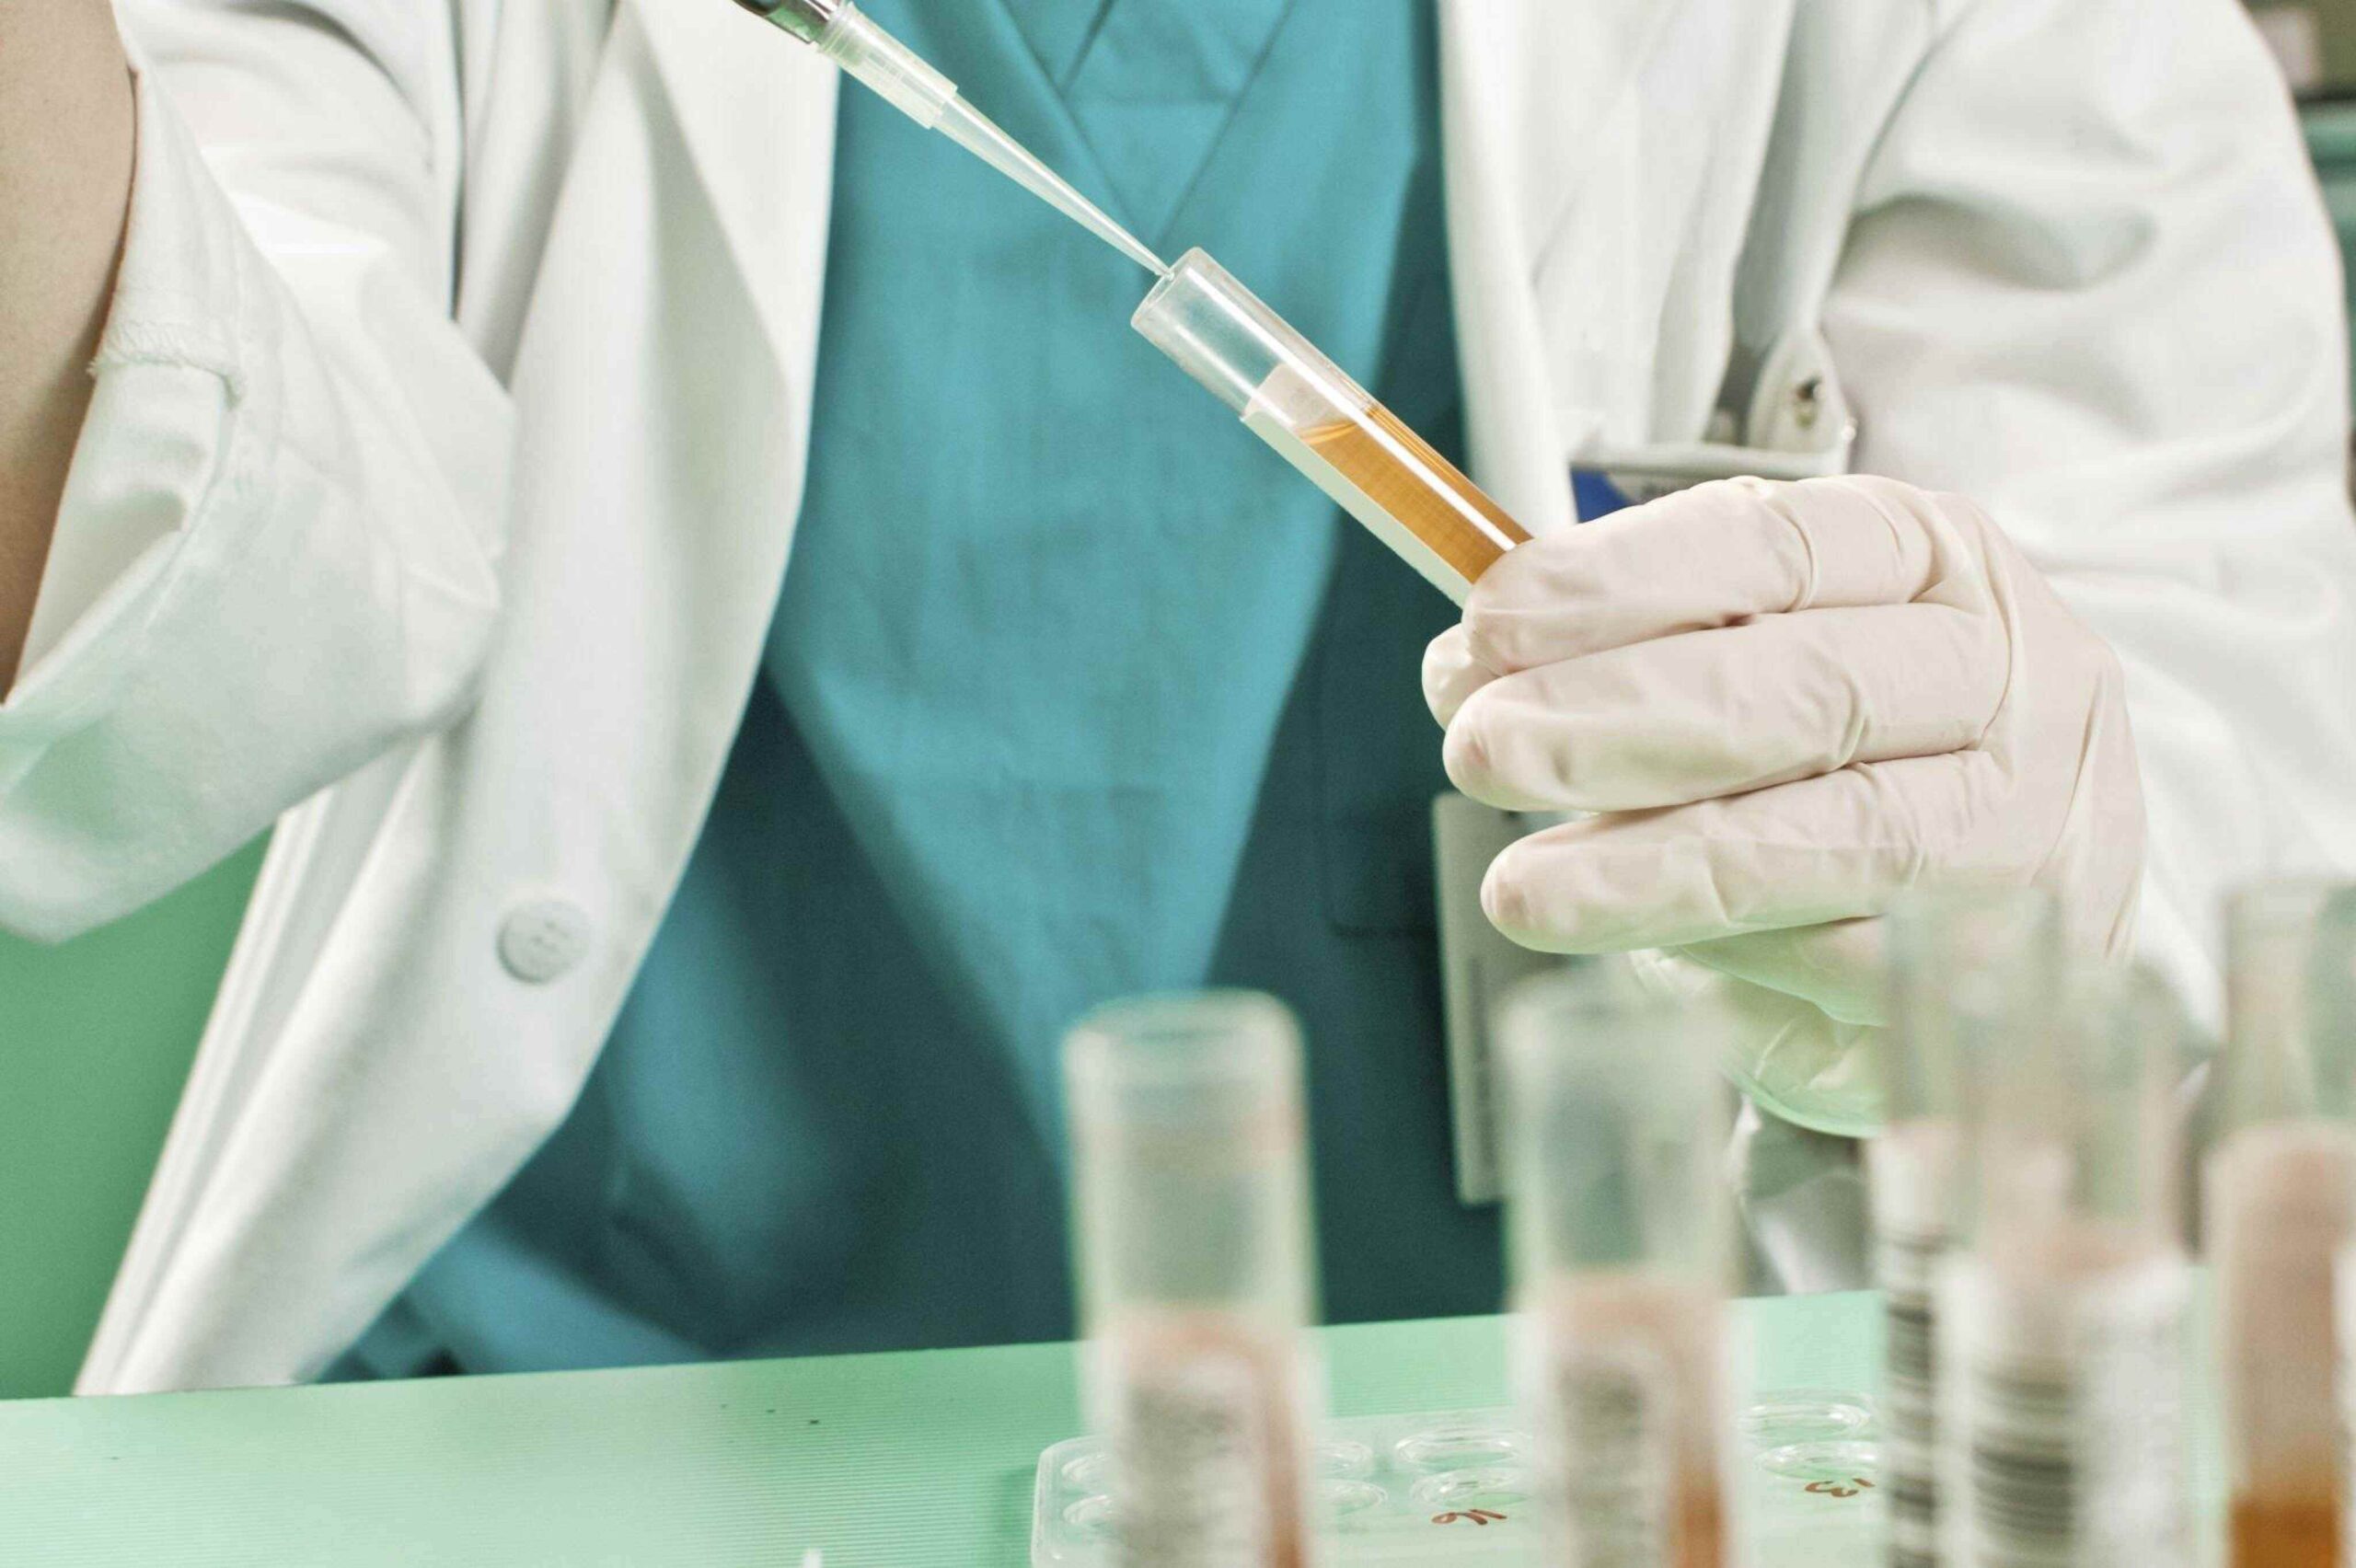 Science Behind Drug Test Kits